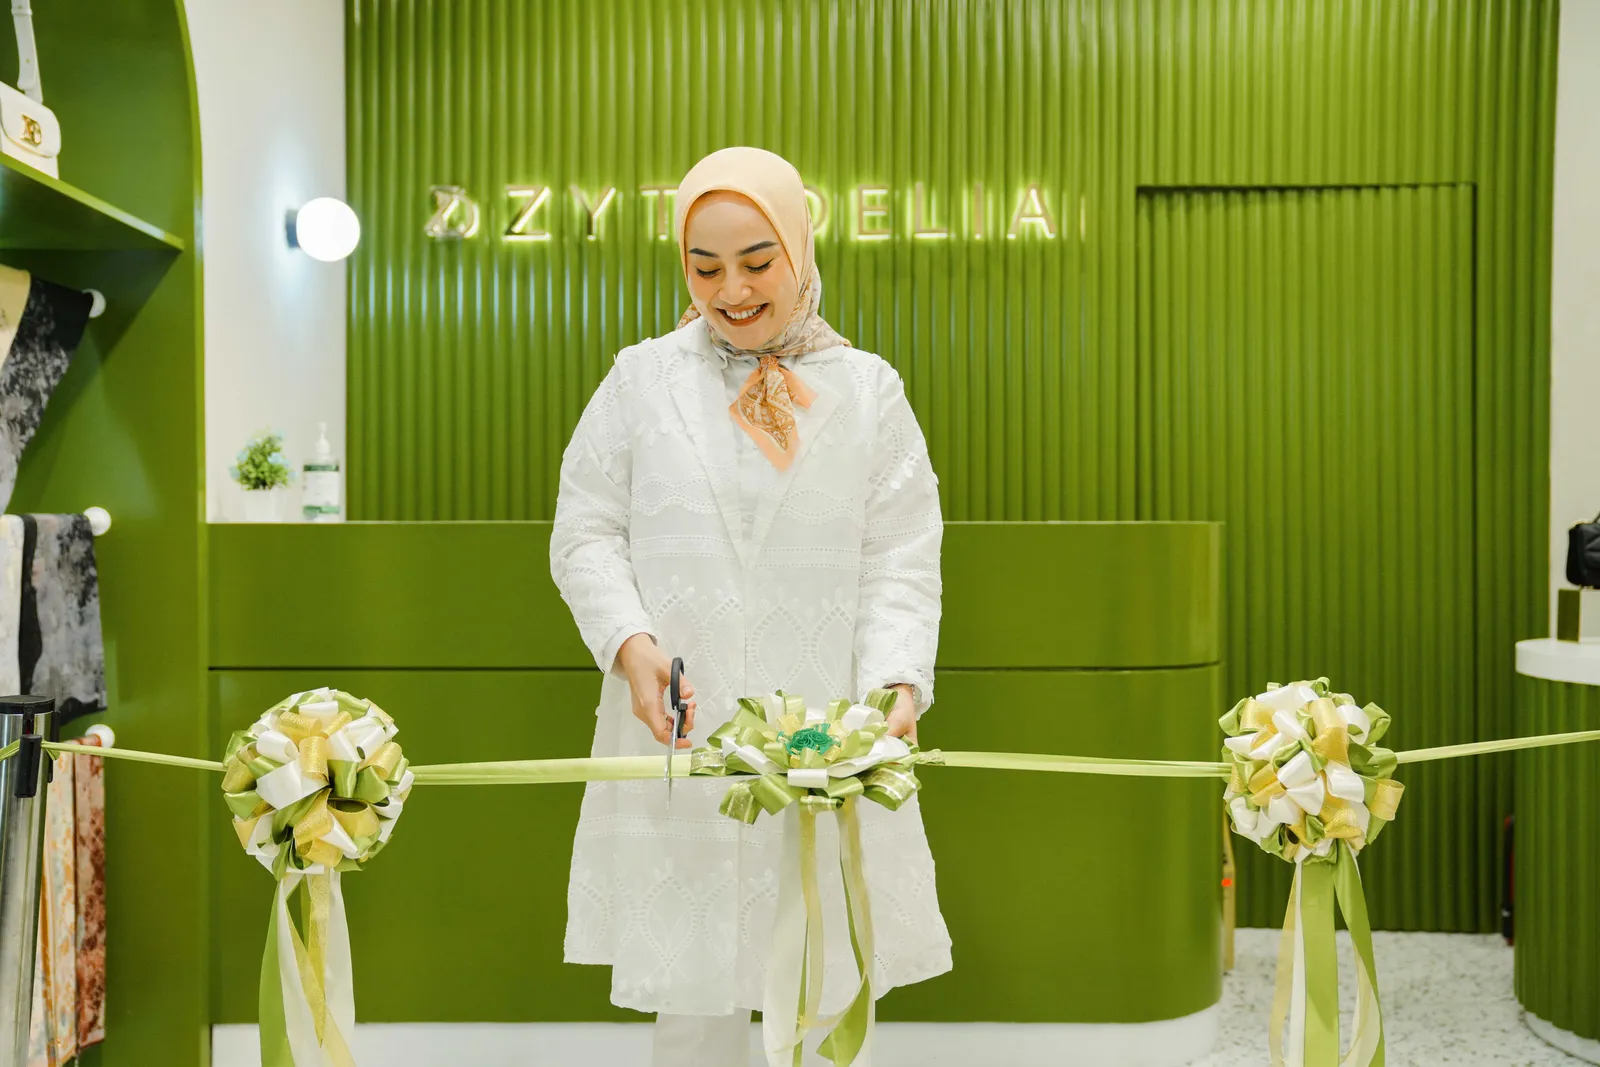 Zyta Delia Rayakan Pembukaan Toko Terbaru di Pondok Indah Mall